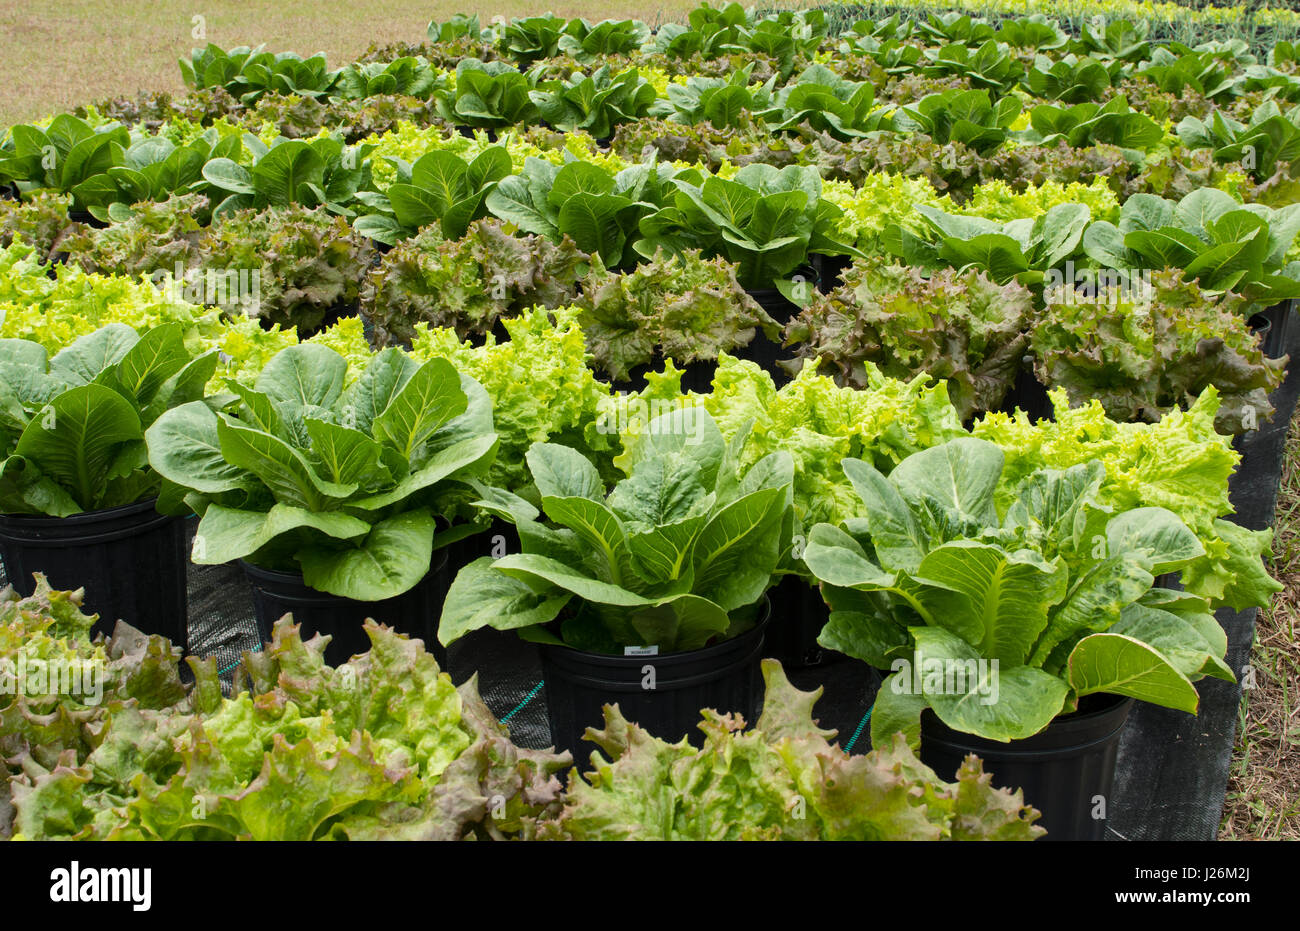 Central Florida home organico giardino con piante di lattuga e verdure in cortile per una sana dieta e mangiare agriturismo coop Foto Stock